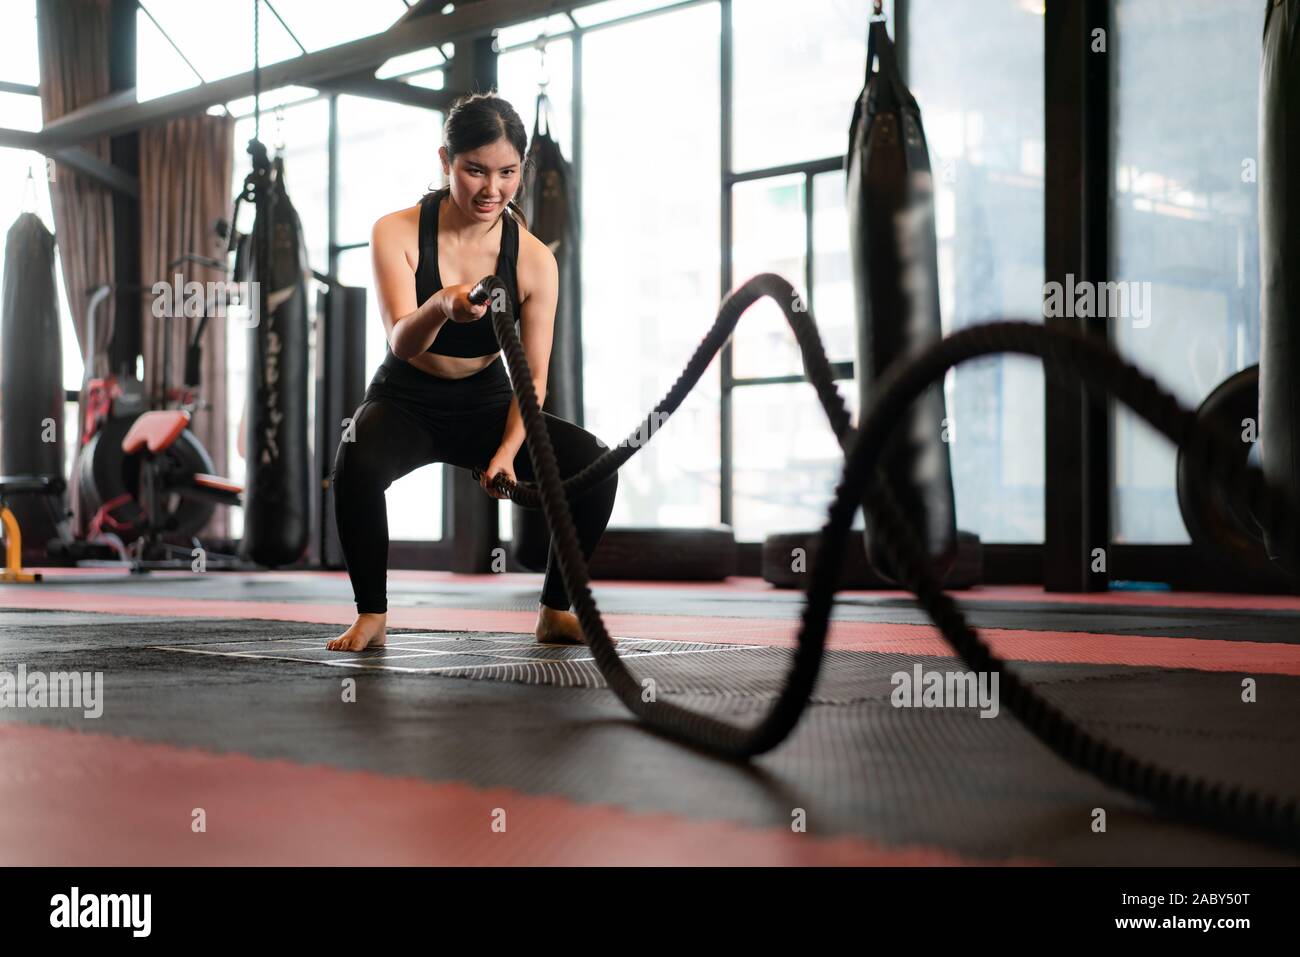 Belle femme asiatique avec balck corde bataille bataille des cordes de l'exercice dans la salle de remise en forme avec sac de boxe en arrière-plan. S'adapter aux modes de vie sportive Banque D'Images